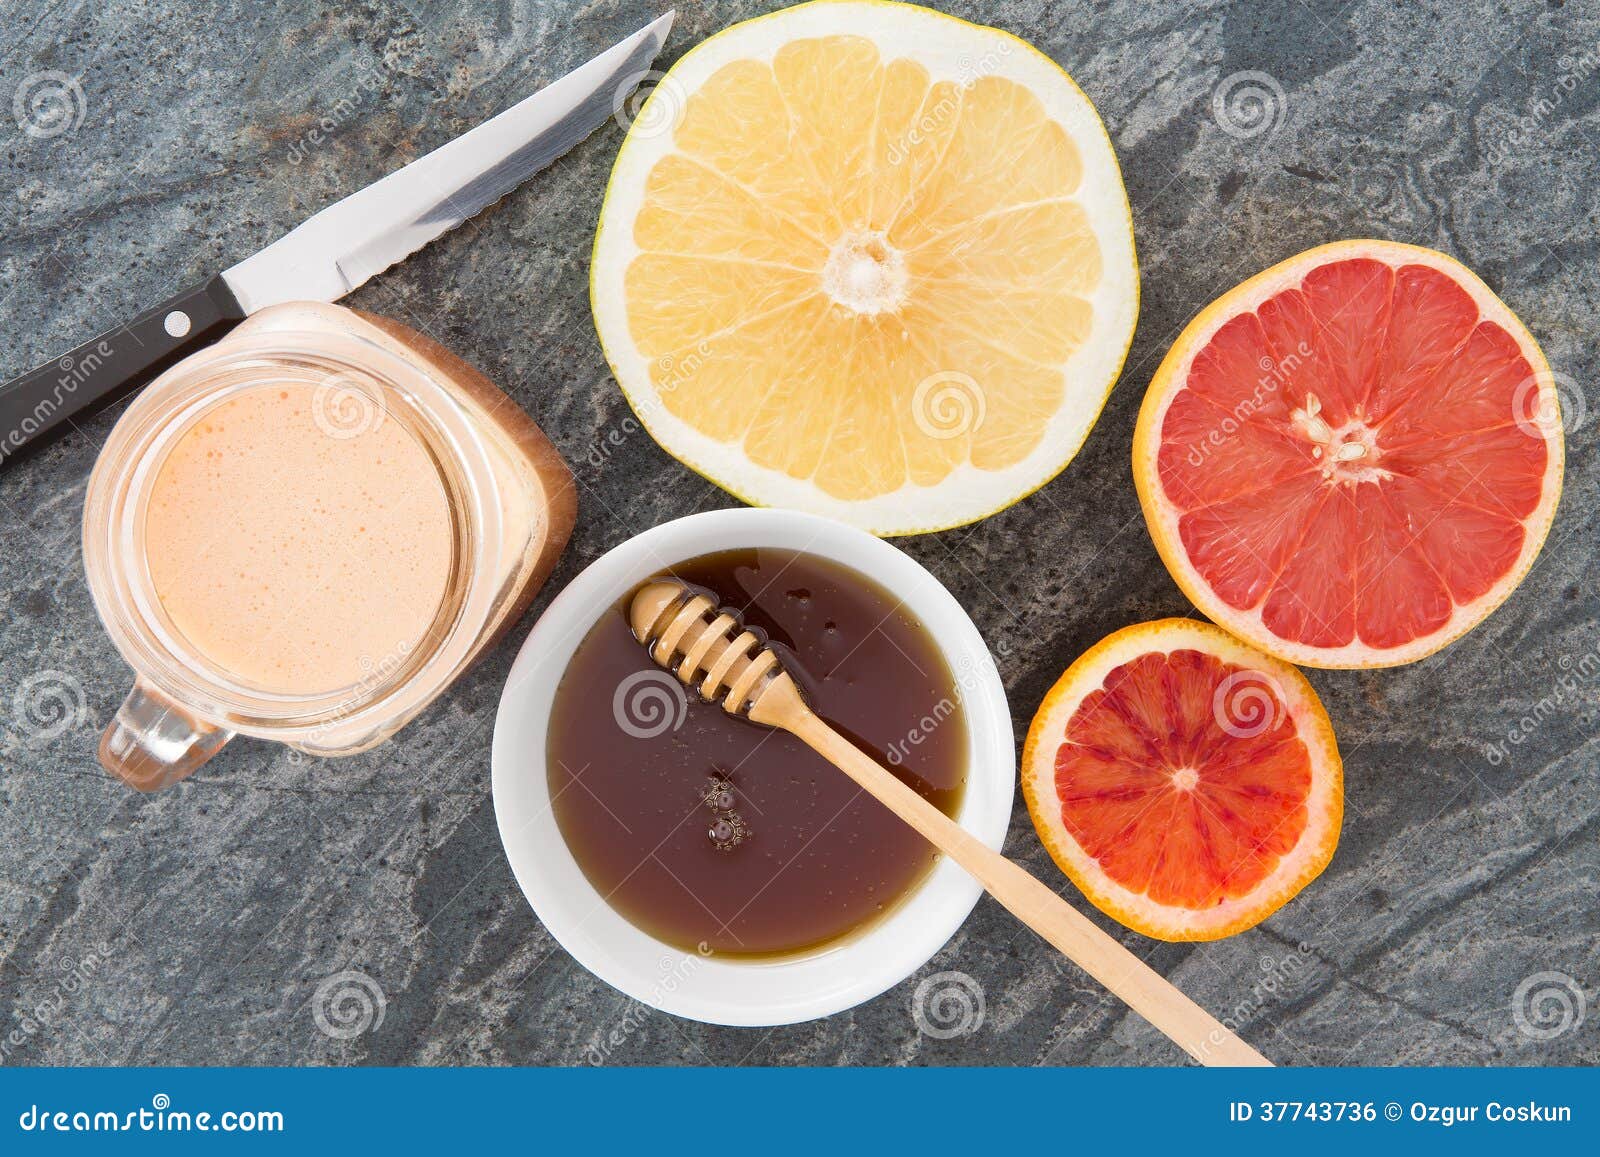 Vers die grapefruit en sap met honing wordt gediend. De heerlijke verfrissende ontbijtdrank van vers gedrukte grapefruit juice diende met honing en grapefruit de helften voor een gezond ontbijt, luchtmening op steencountertop